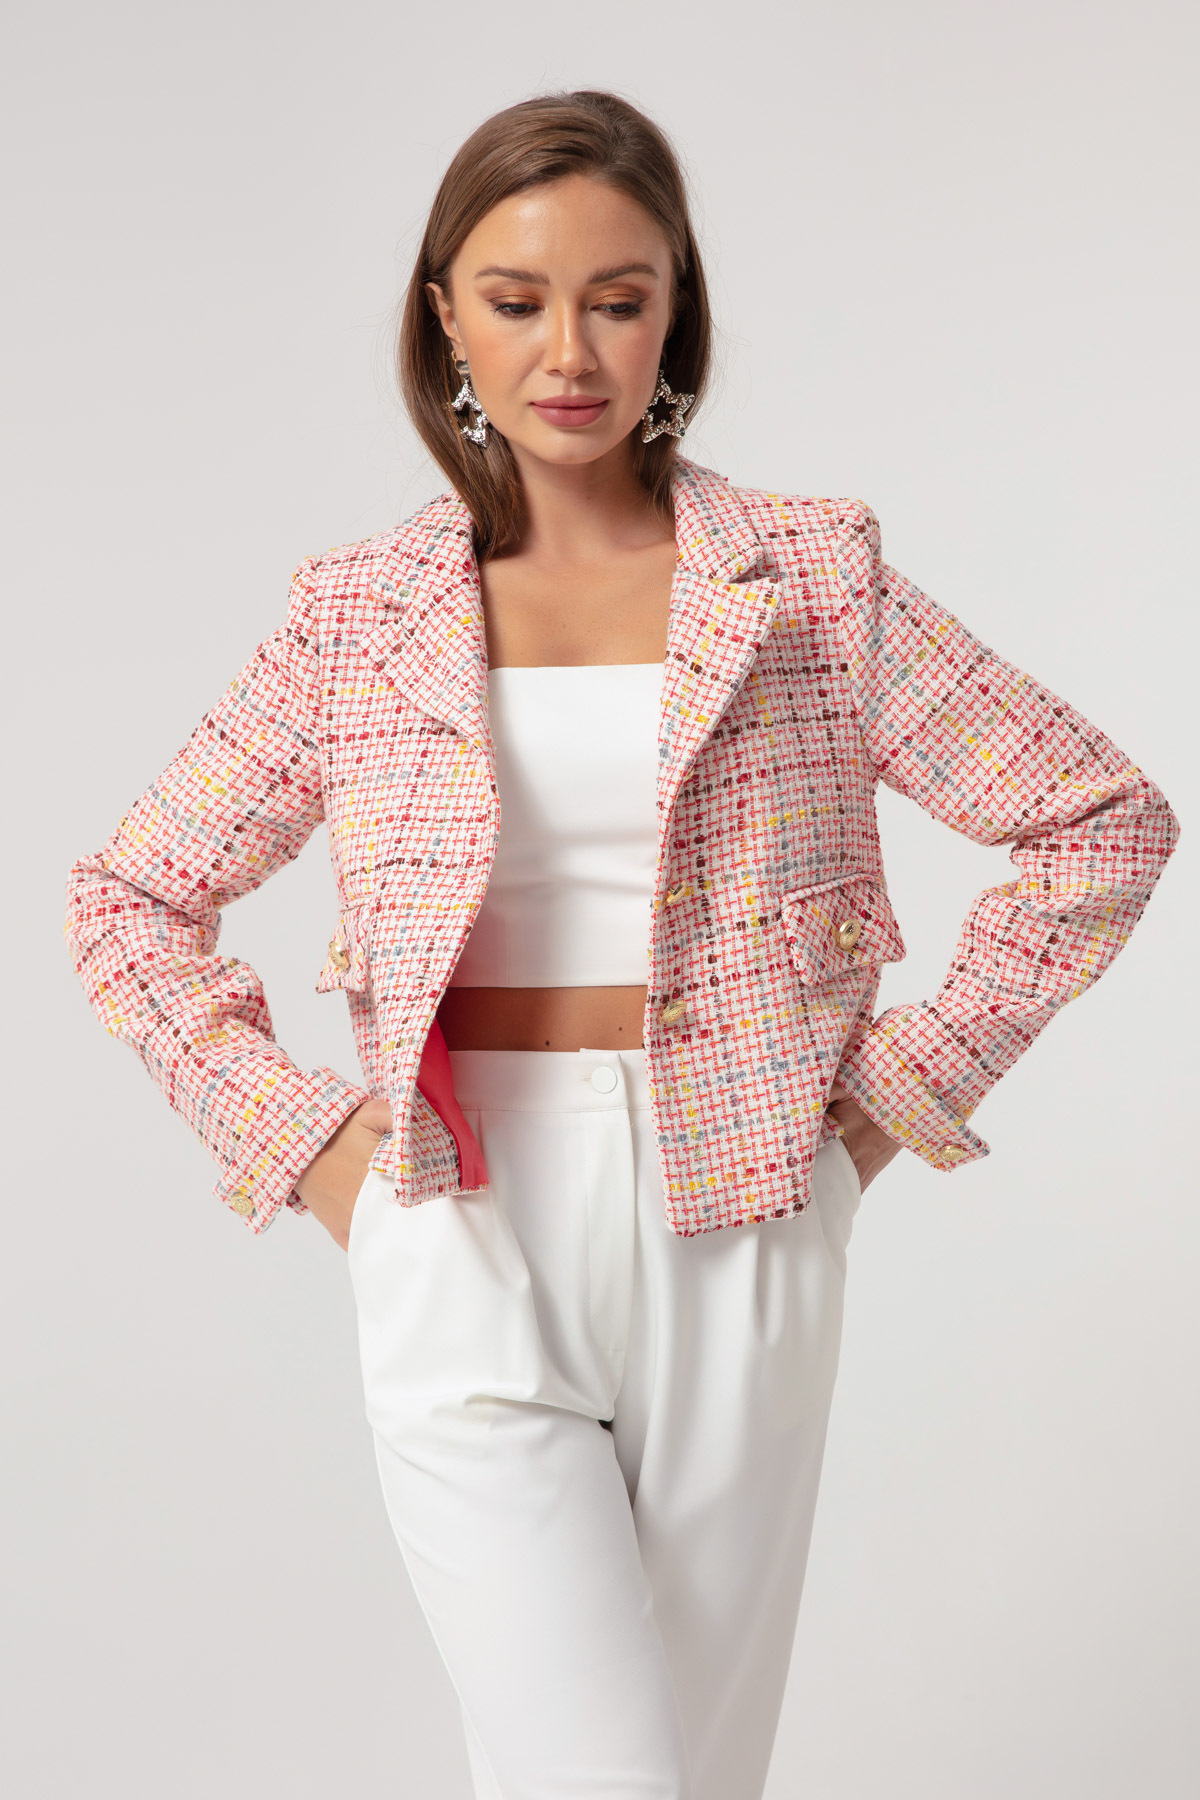 Женская короткая куртка пудрового цвета Lafaba, розовый трикотажное платье пудрового цвета натали 10320 розовый размер 42